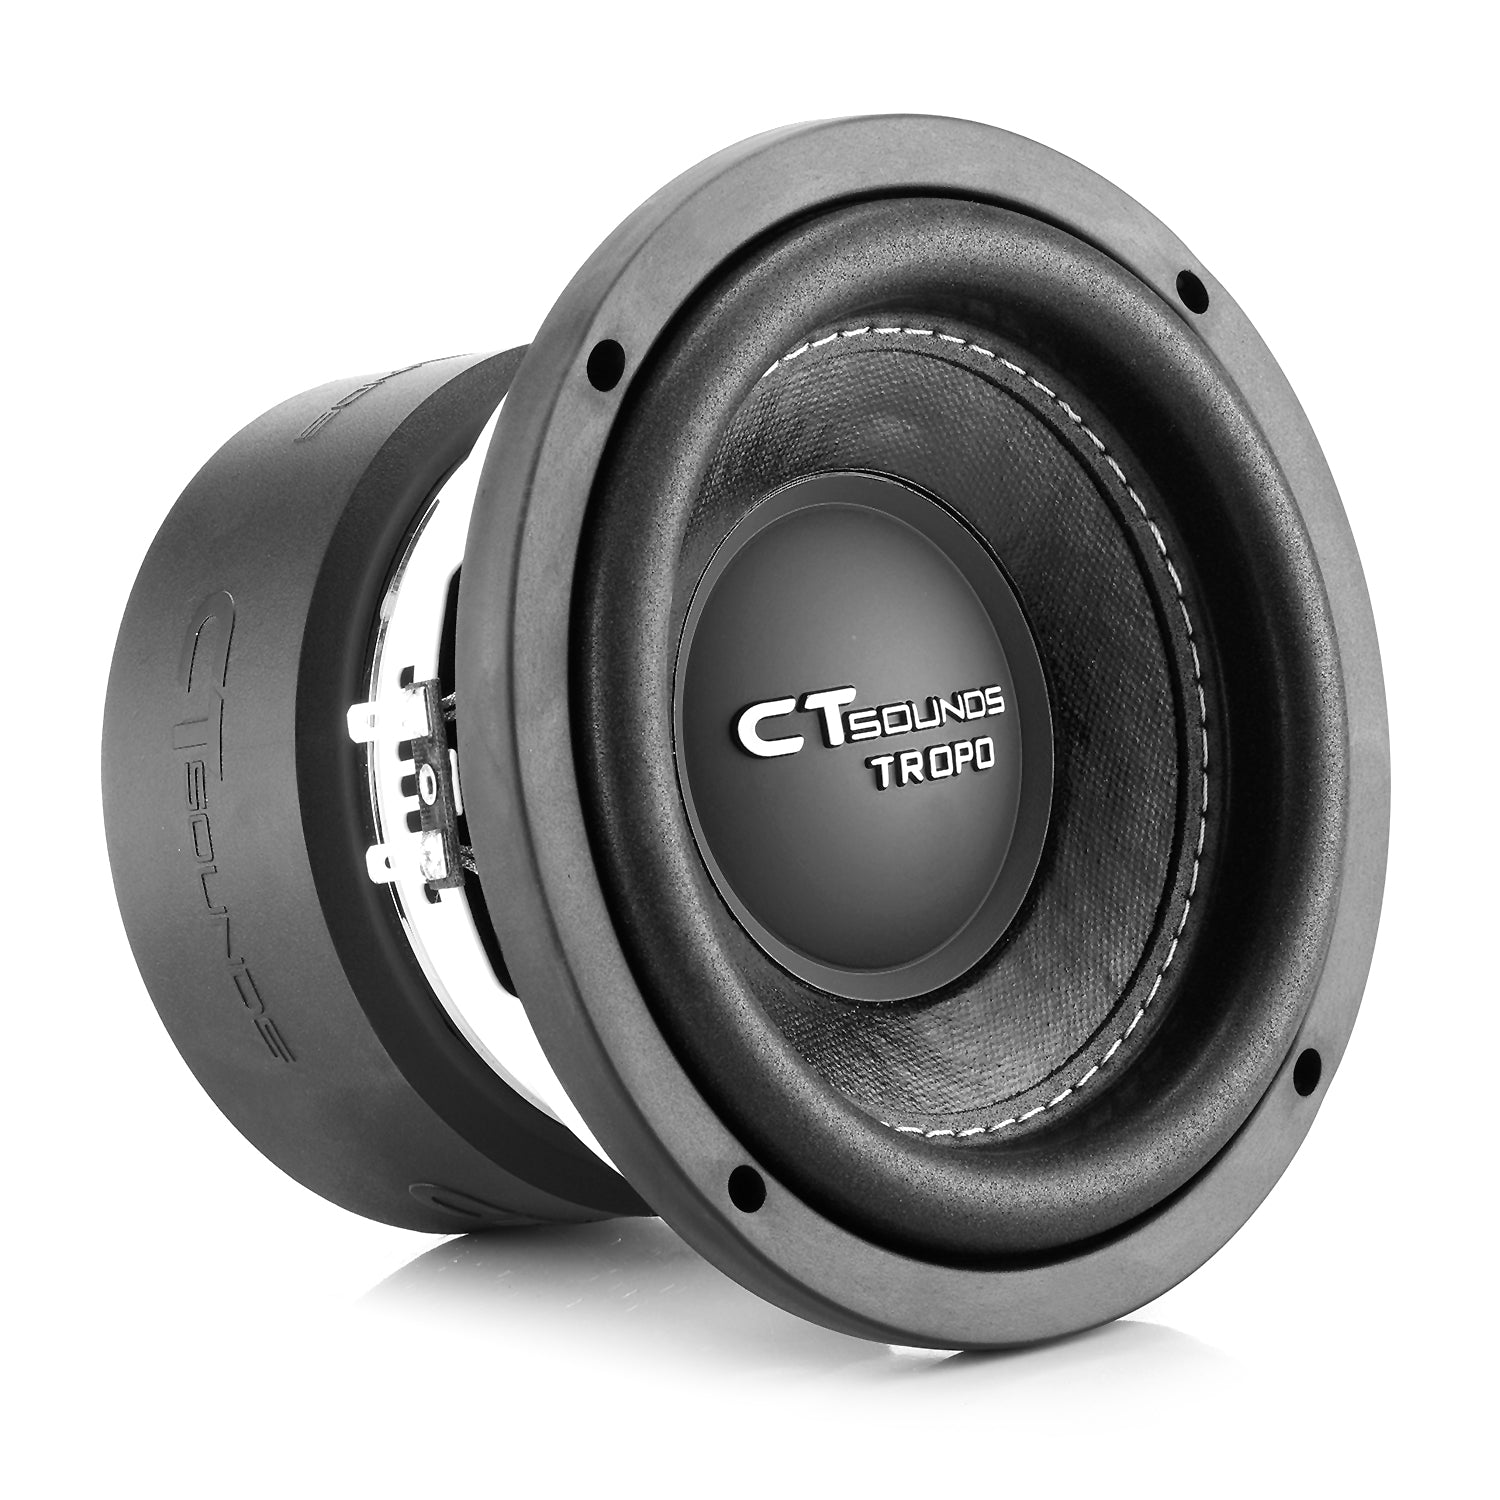 TROPO-6.5 - 400 Watt 6.5 Inch Car Subwoofer - CT Sounds – SOUNDS